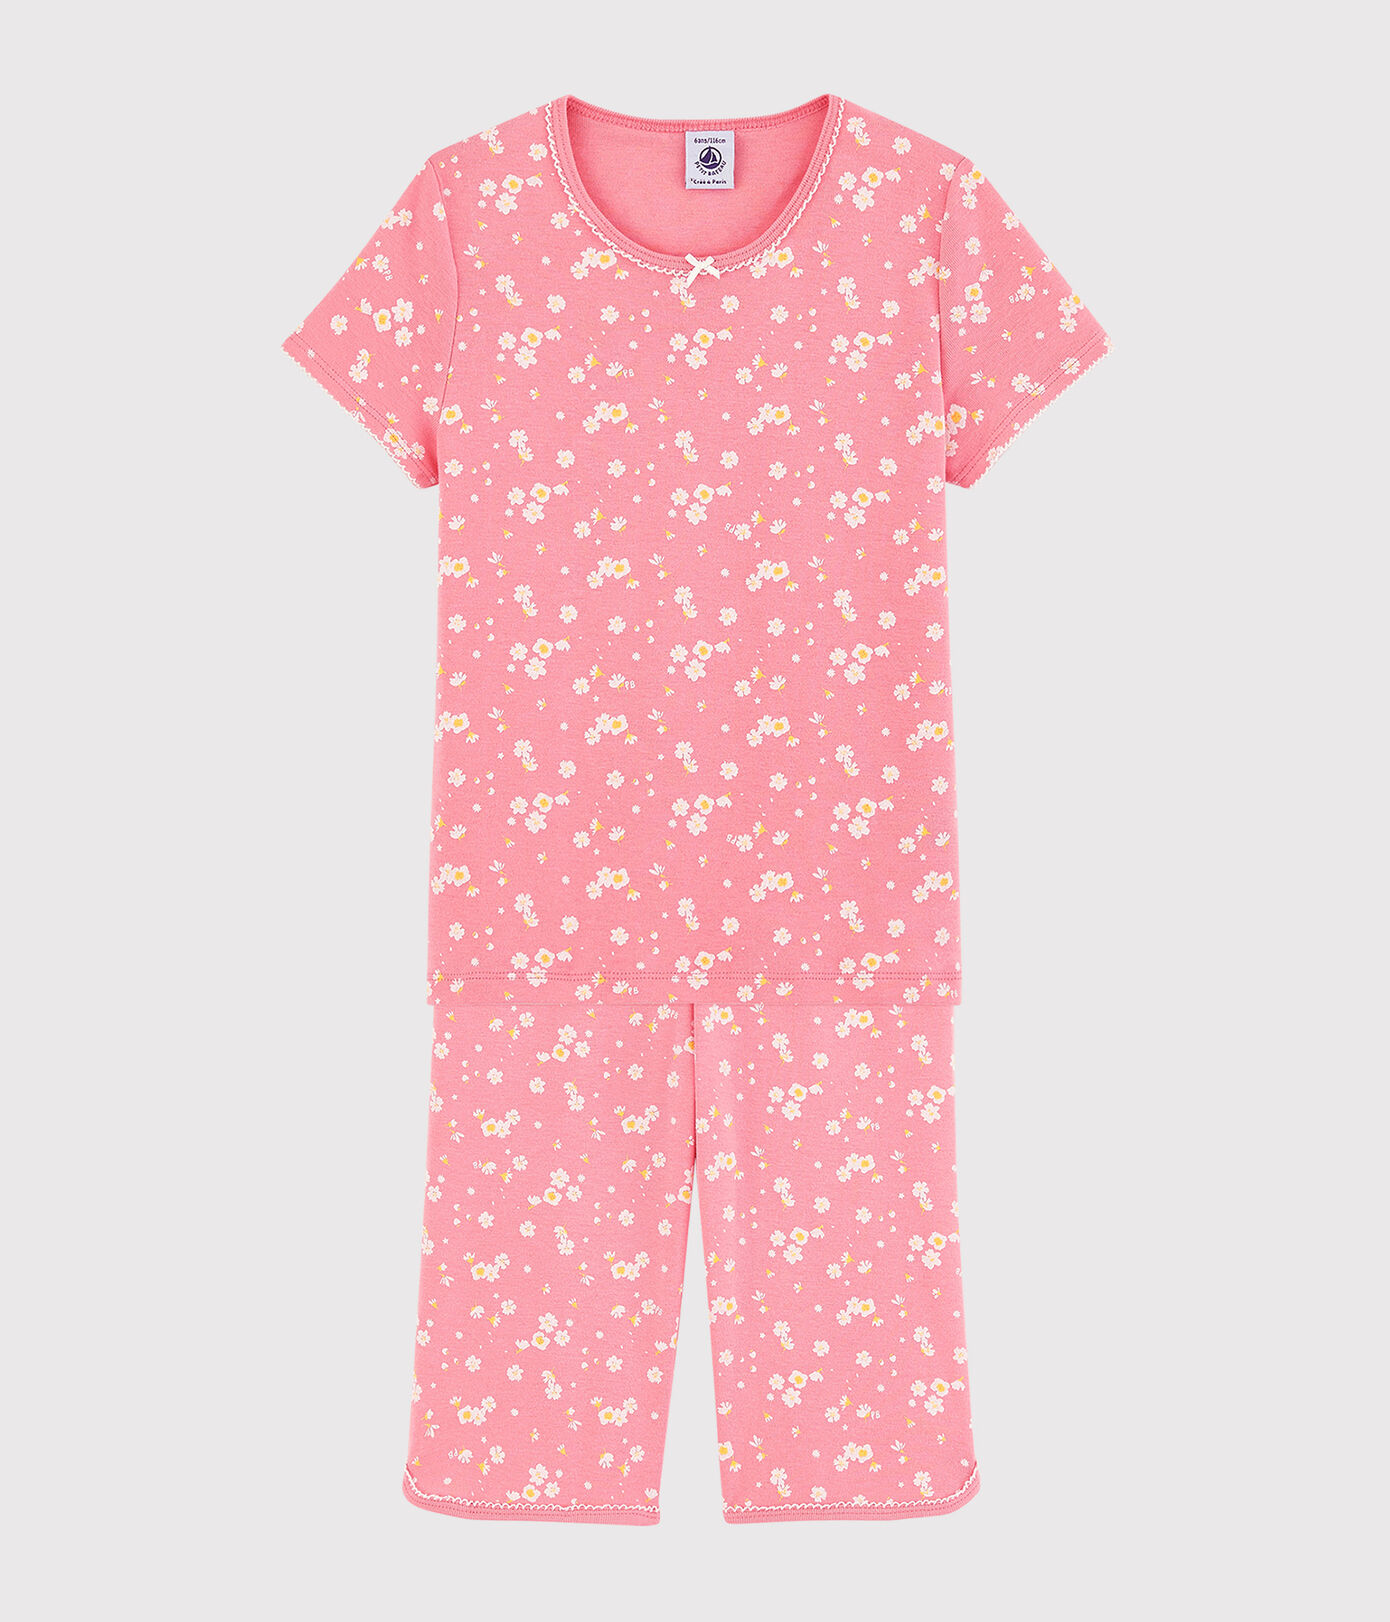 Pijama corto con estampado de flores de cerezo de niña de algodón